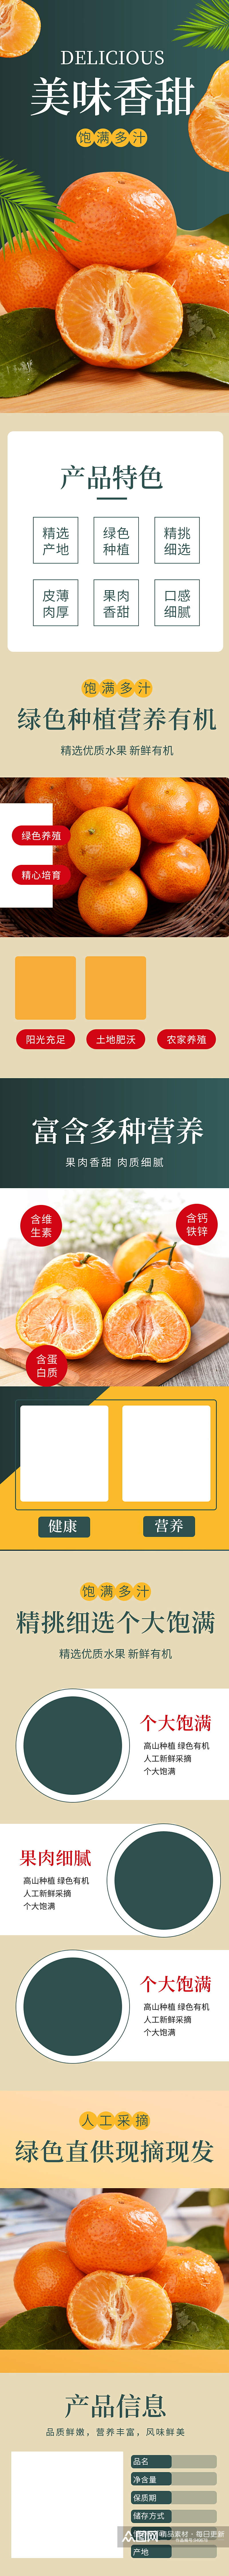 淘宝水果食品生鲜蜜橘橘子详情页素材